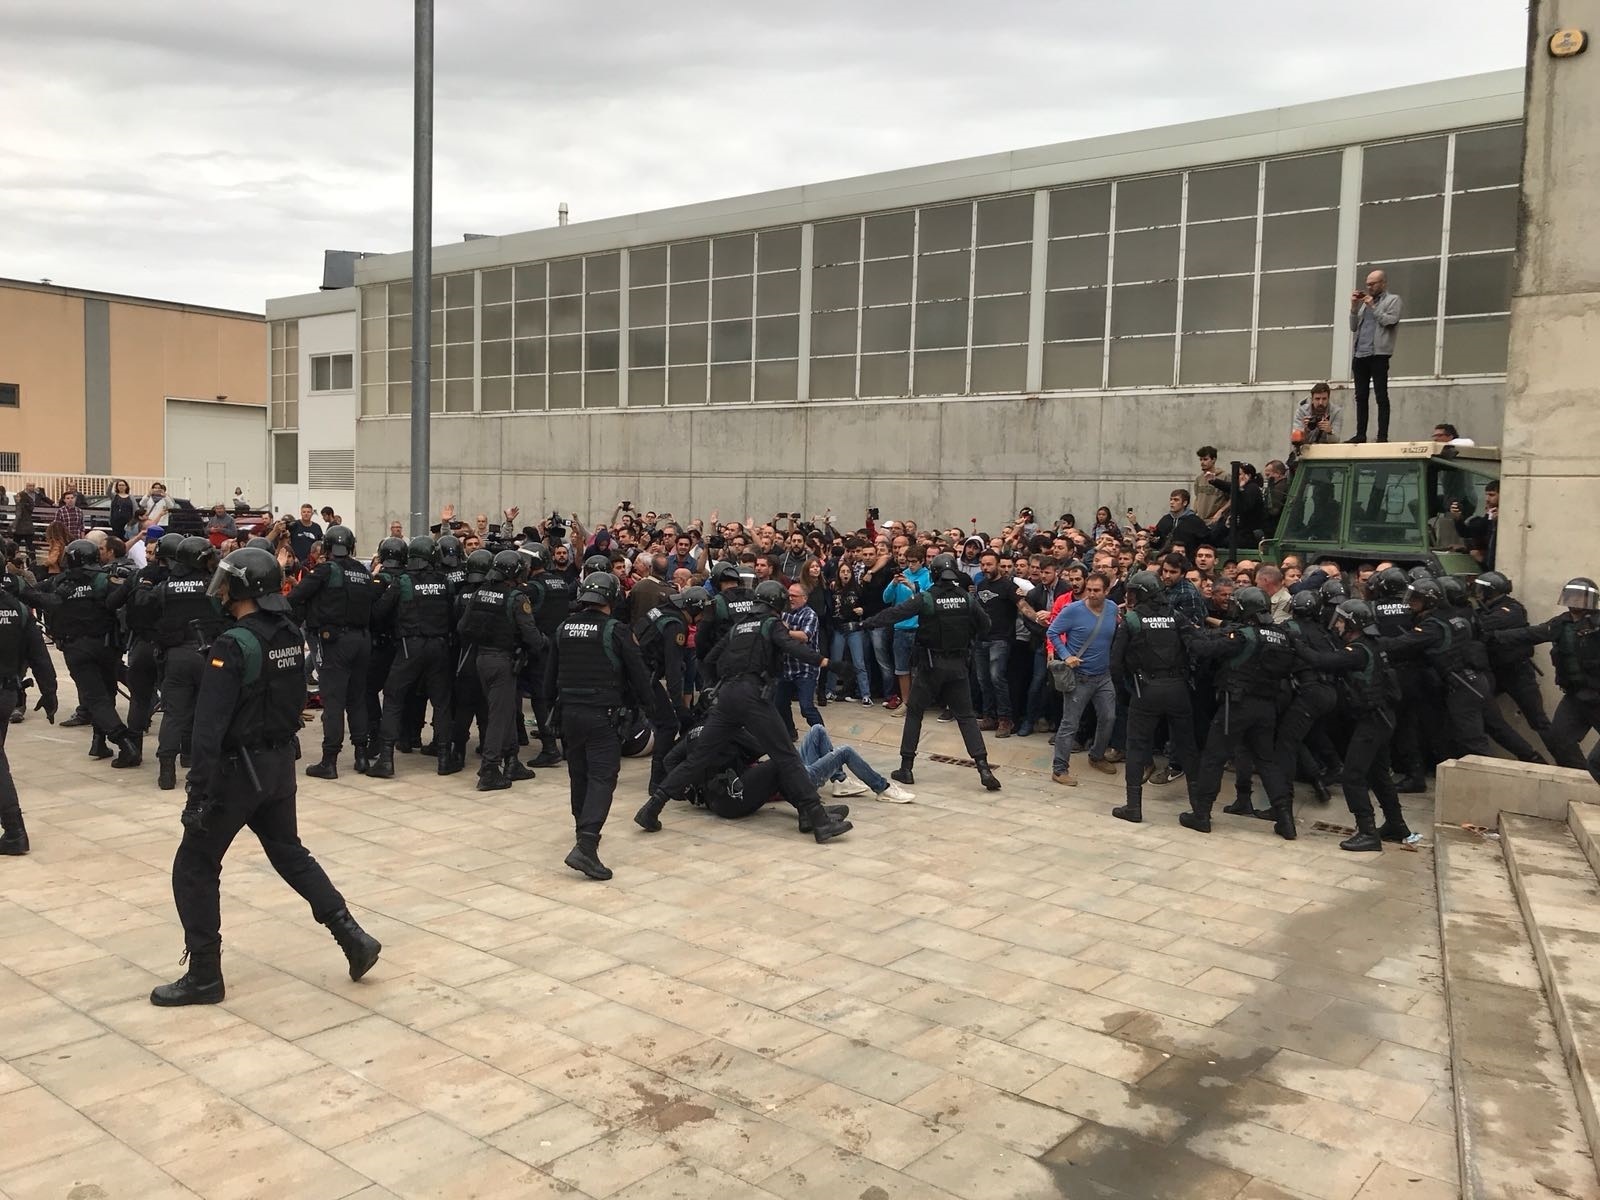 Cordó policial a Sant Julià de Ramis, durant l'1-O